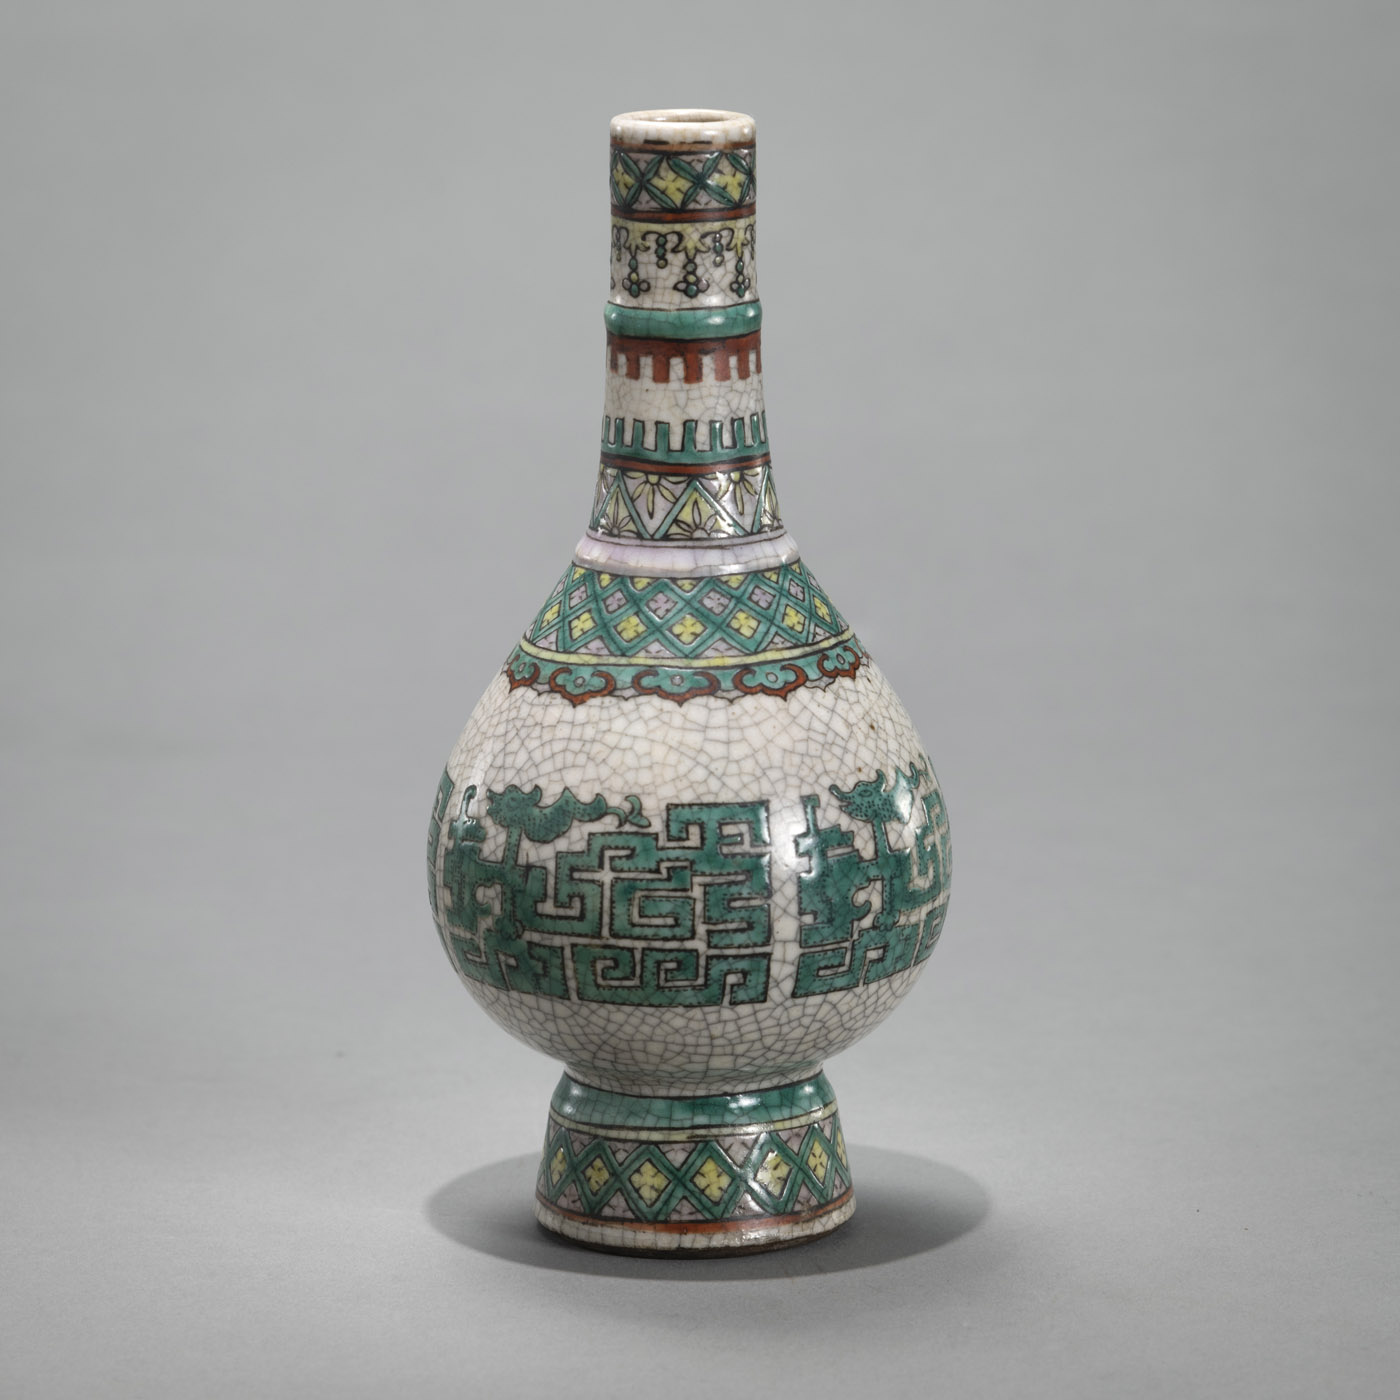 <b>Flaschenvase mit archaistischem Dekor auf krakeliertem Grund</b>